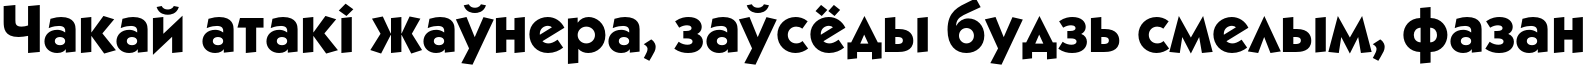 Пример написания шрифтом KabelC Medium Bold текста на белорусском